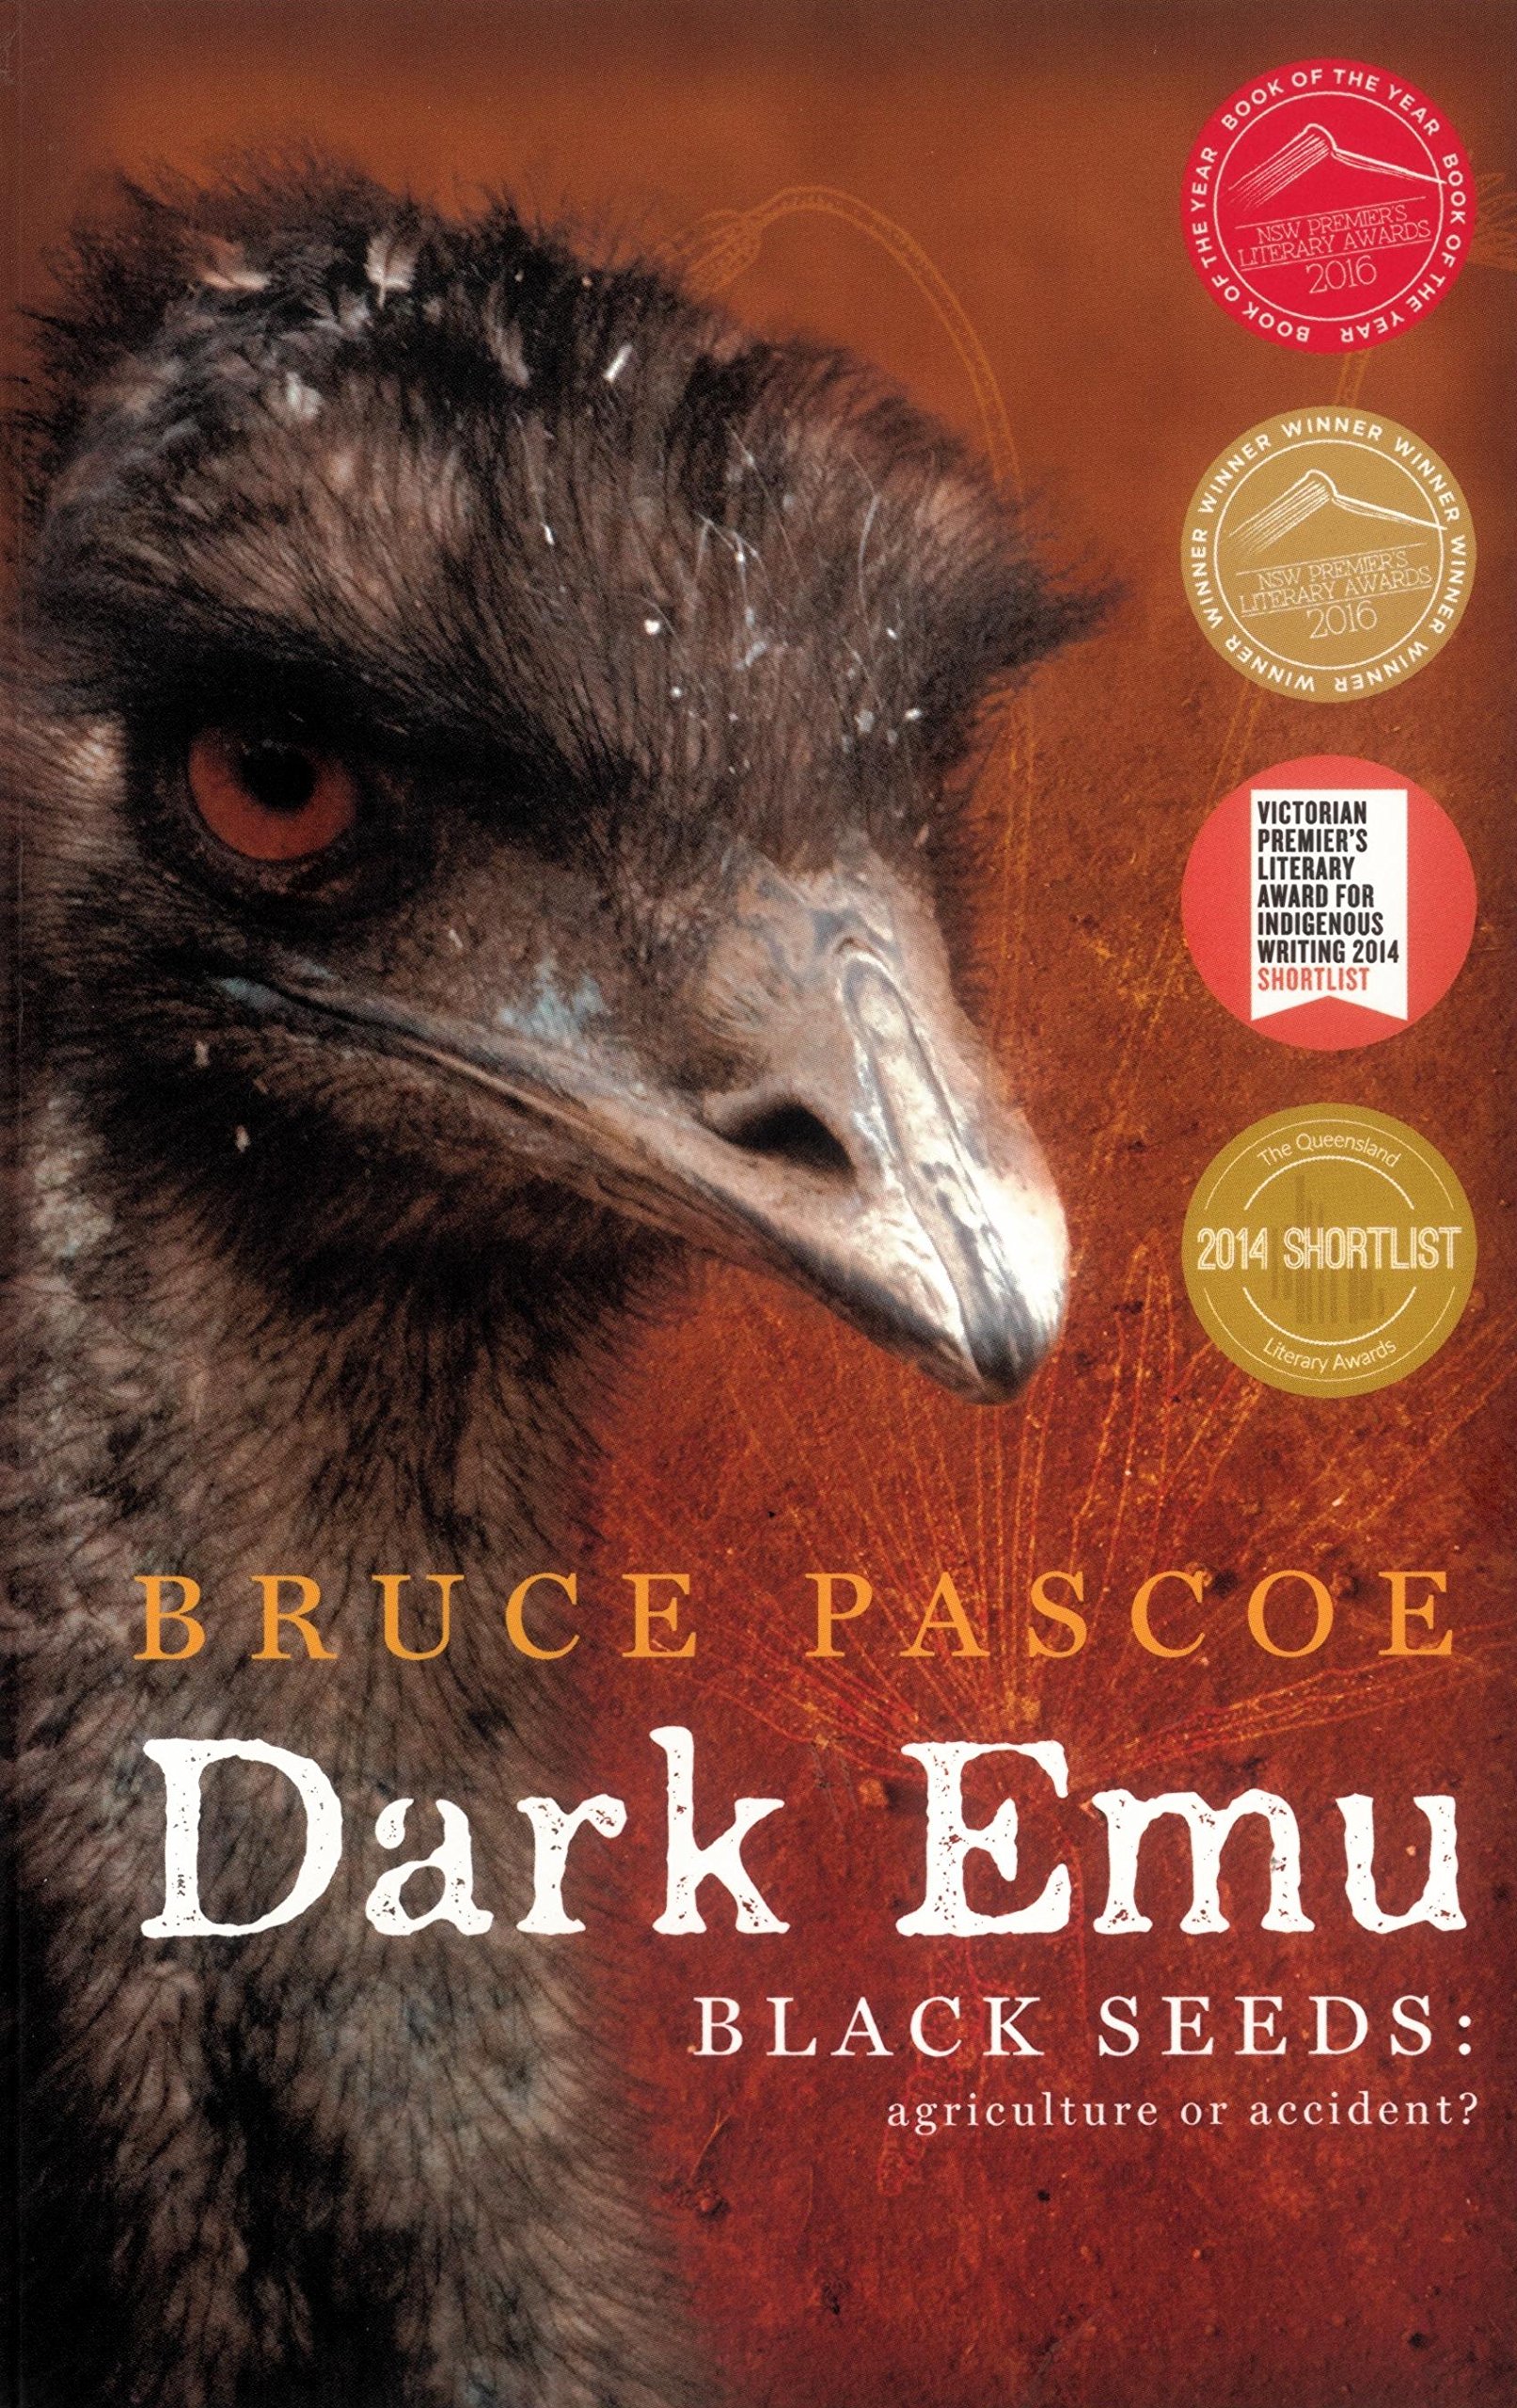 Buch cover von bruce Pascoes Dark Emu, auf dem ein Emu abgebildet ist